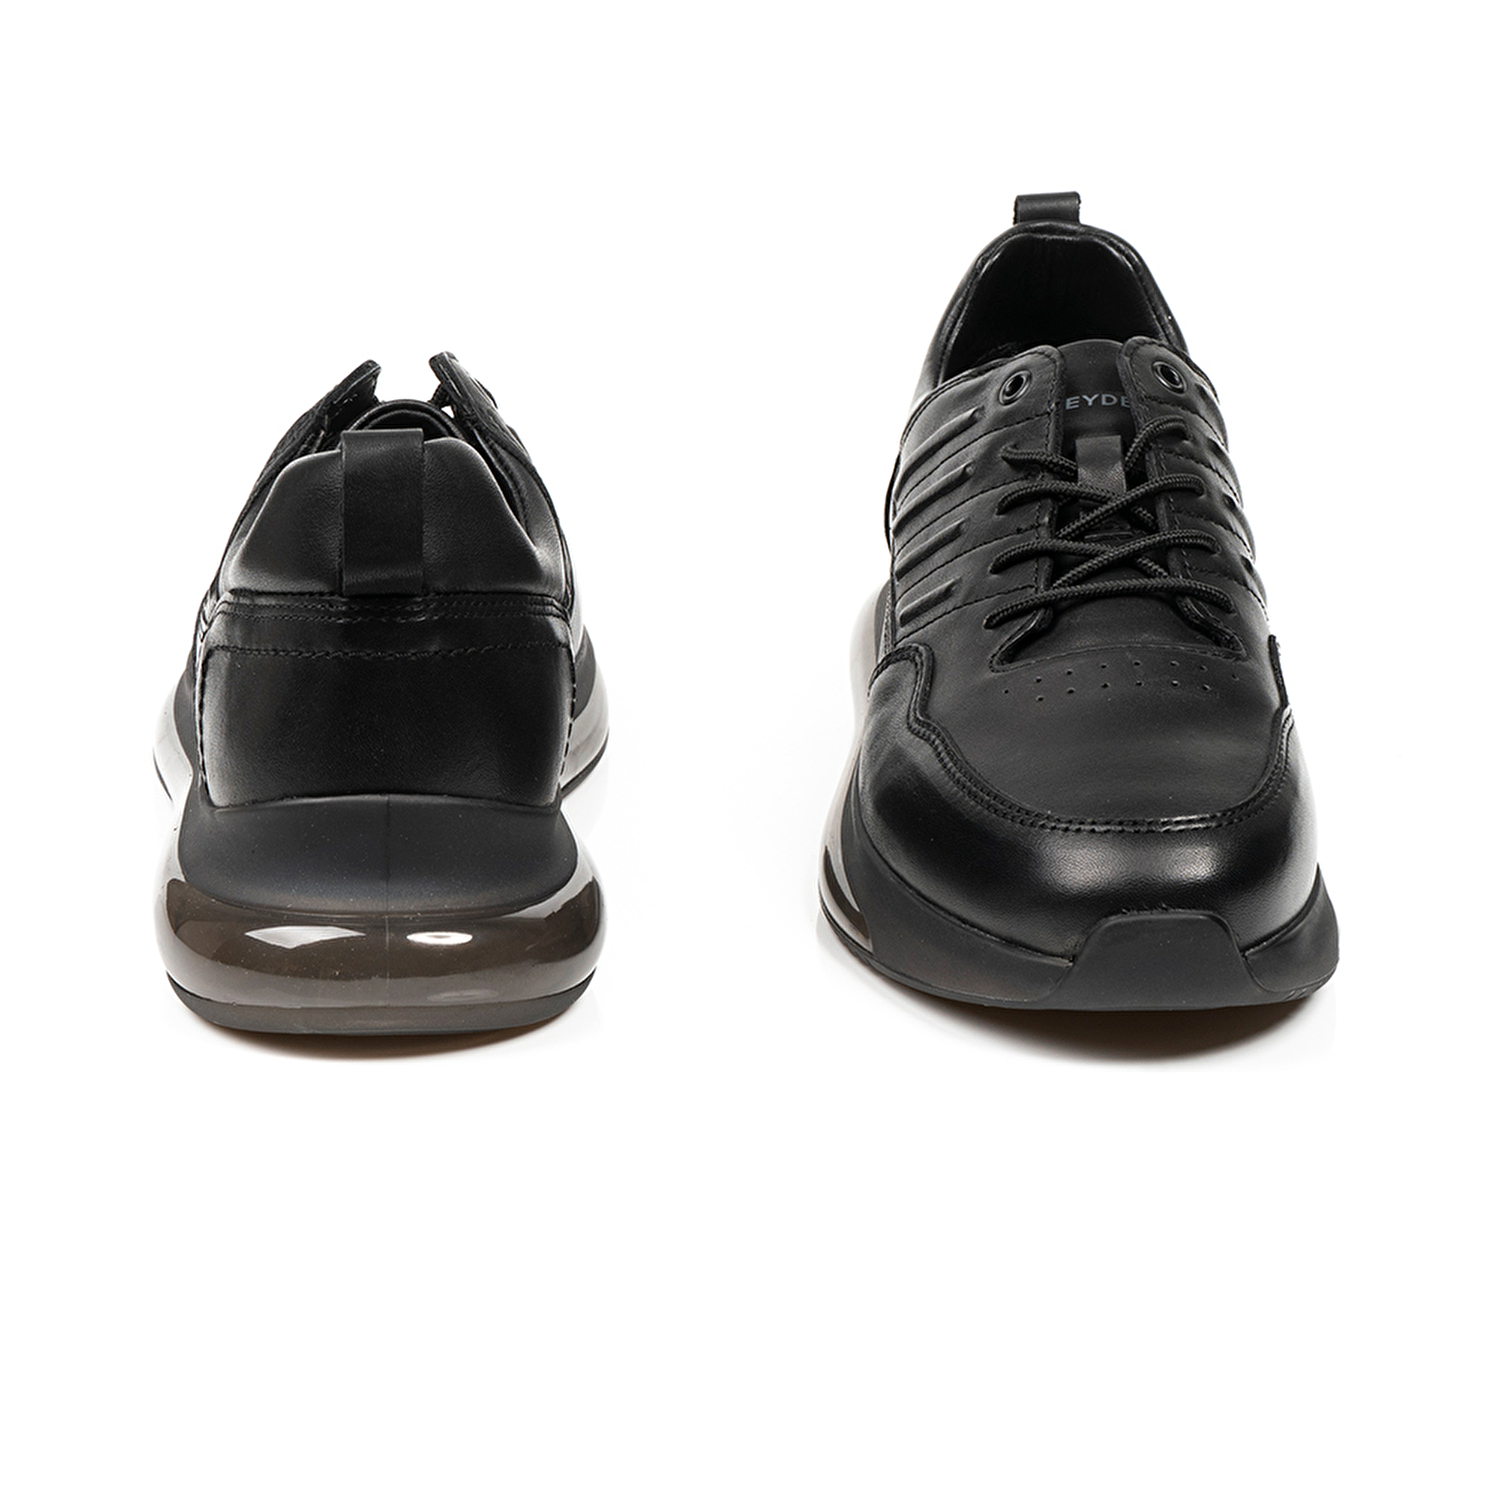 Erkek Ayakkabı Siyah 15060-4